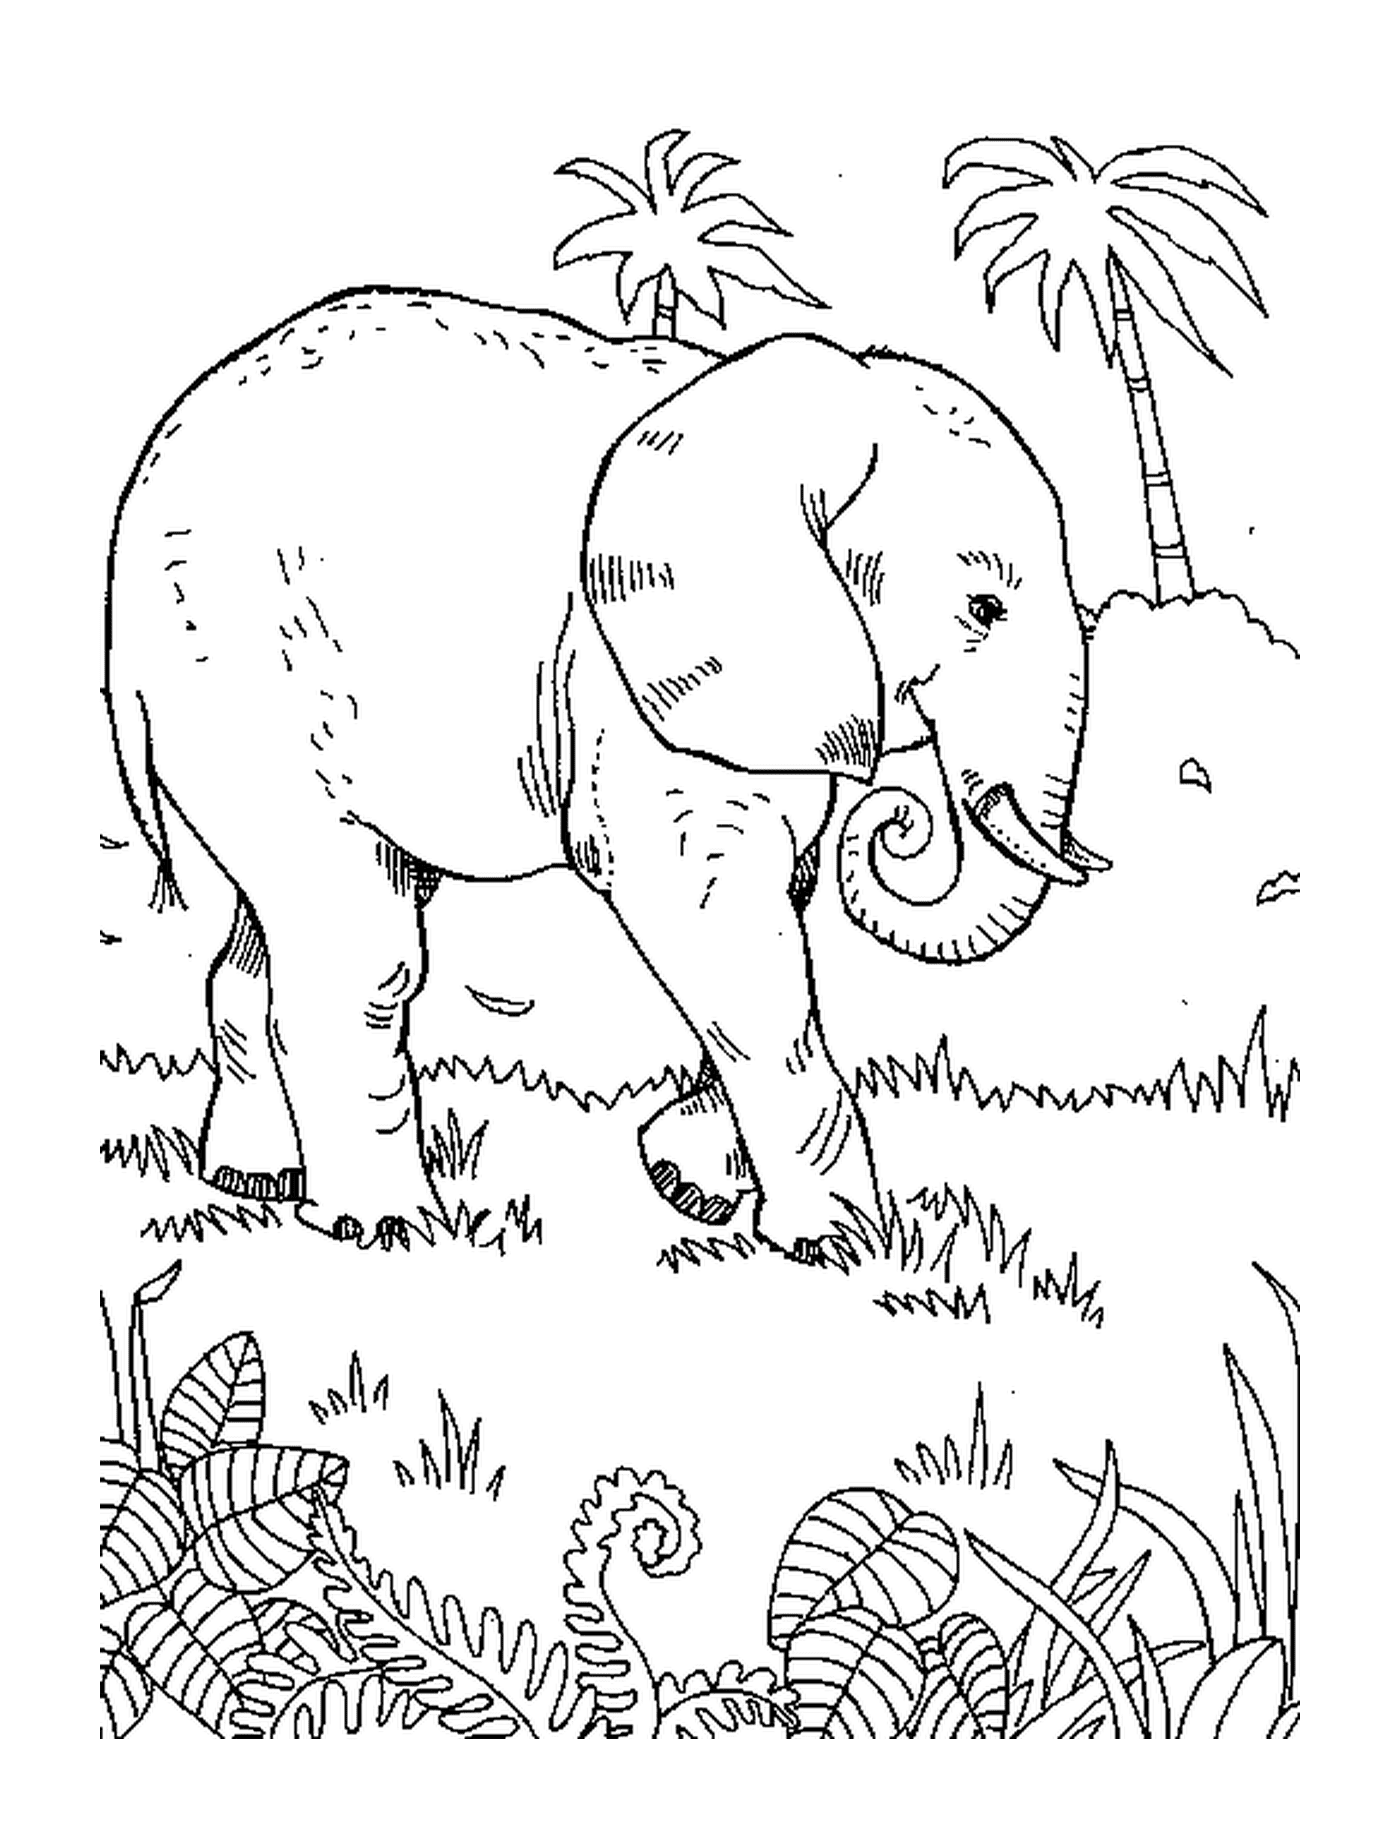  Слон, идущий по траве возле пальмы 